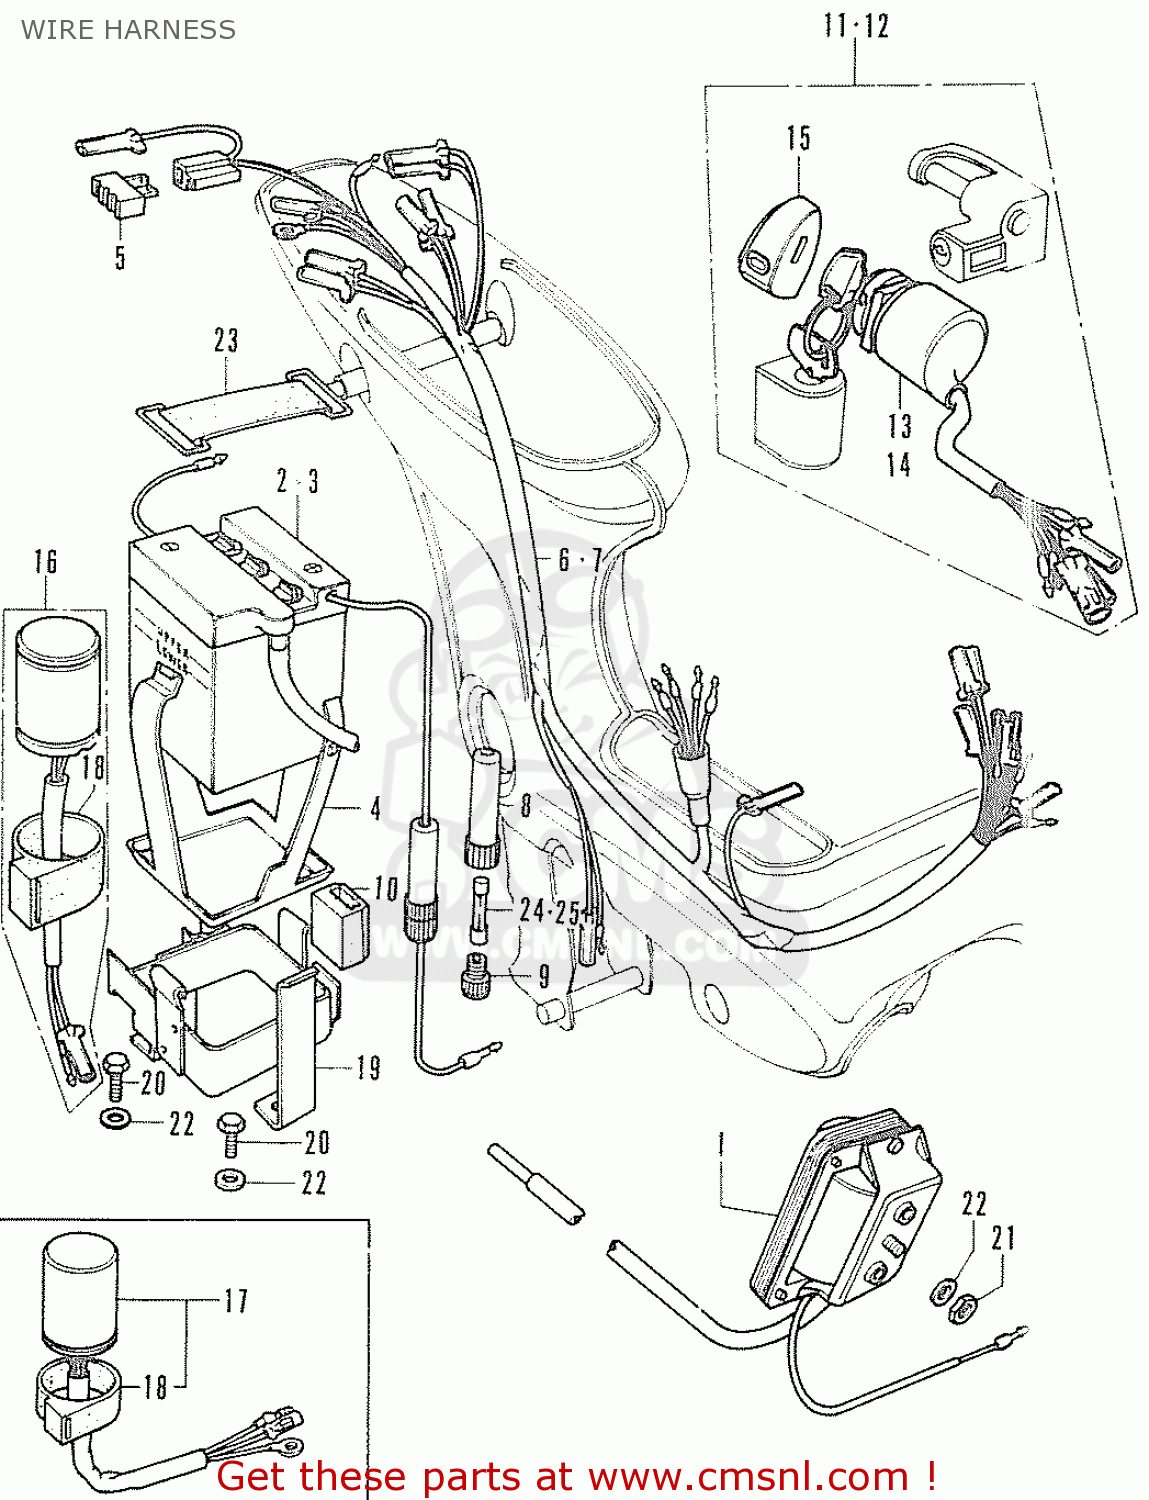 Honda cf70 chaly parts #1